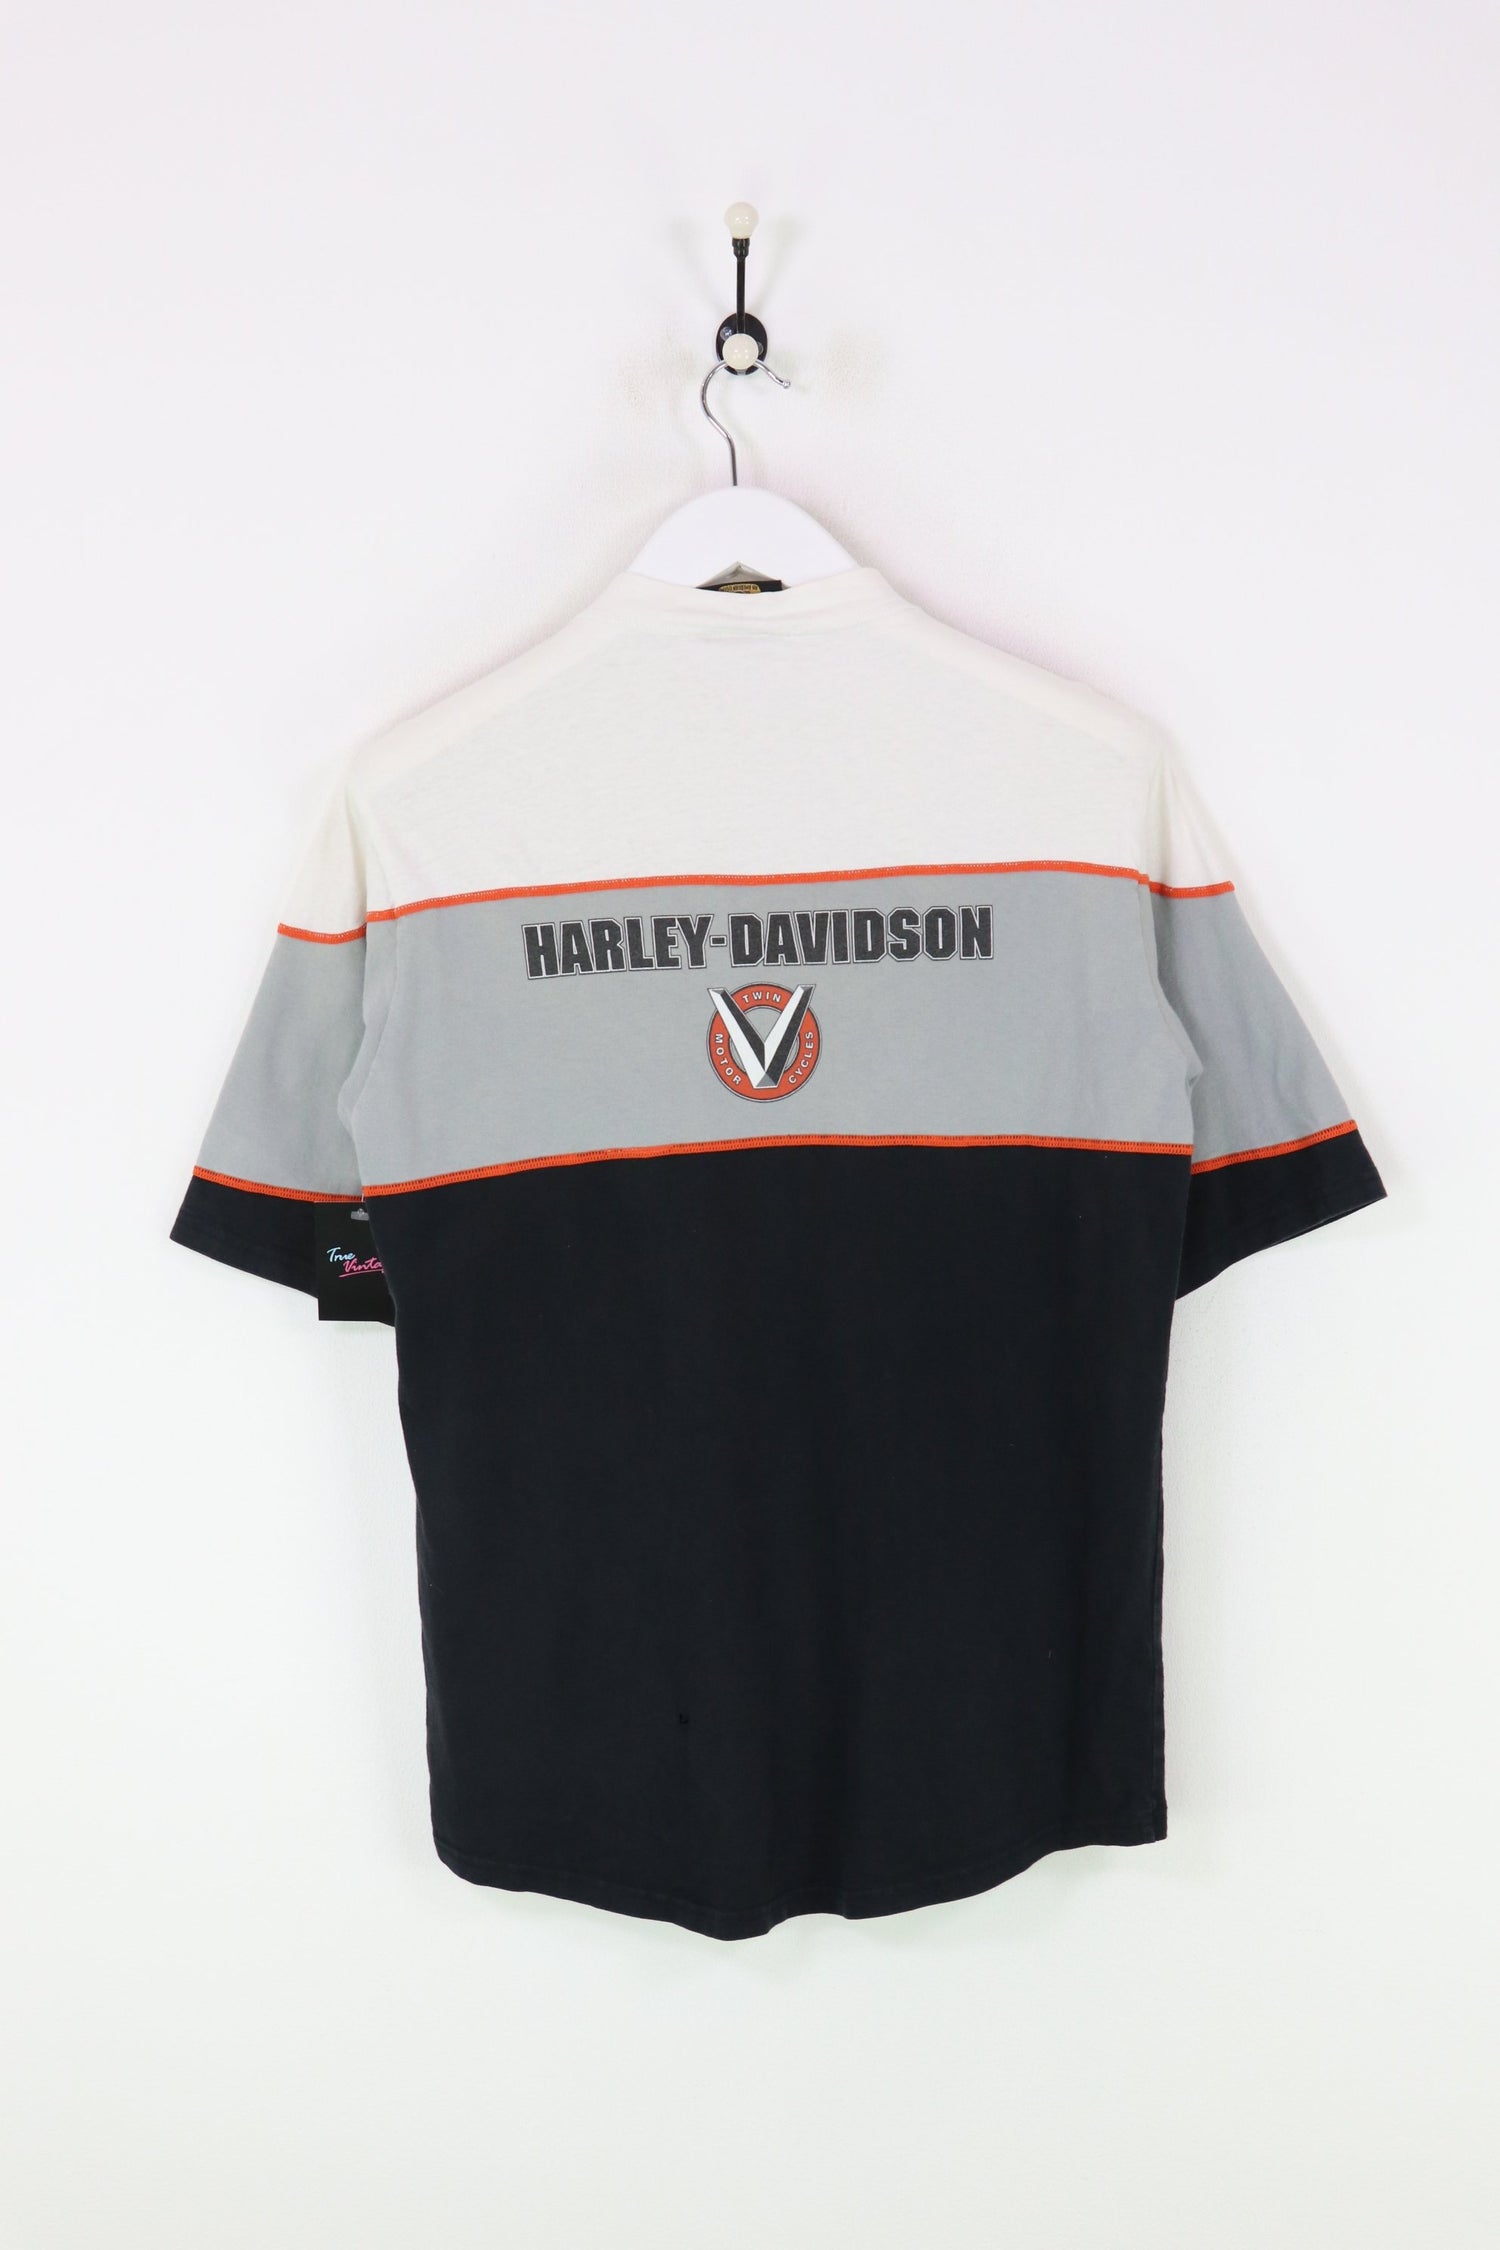 Harley Davidson T-shirt White/Black Medium